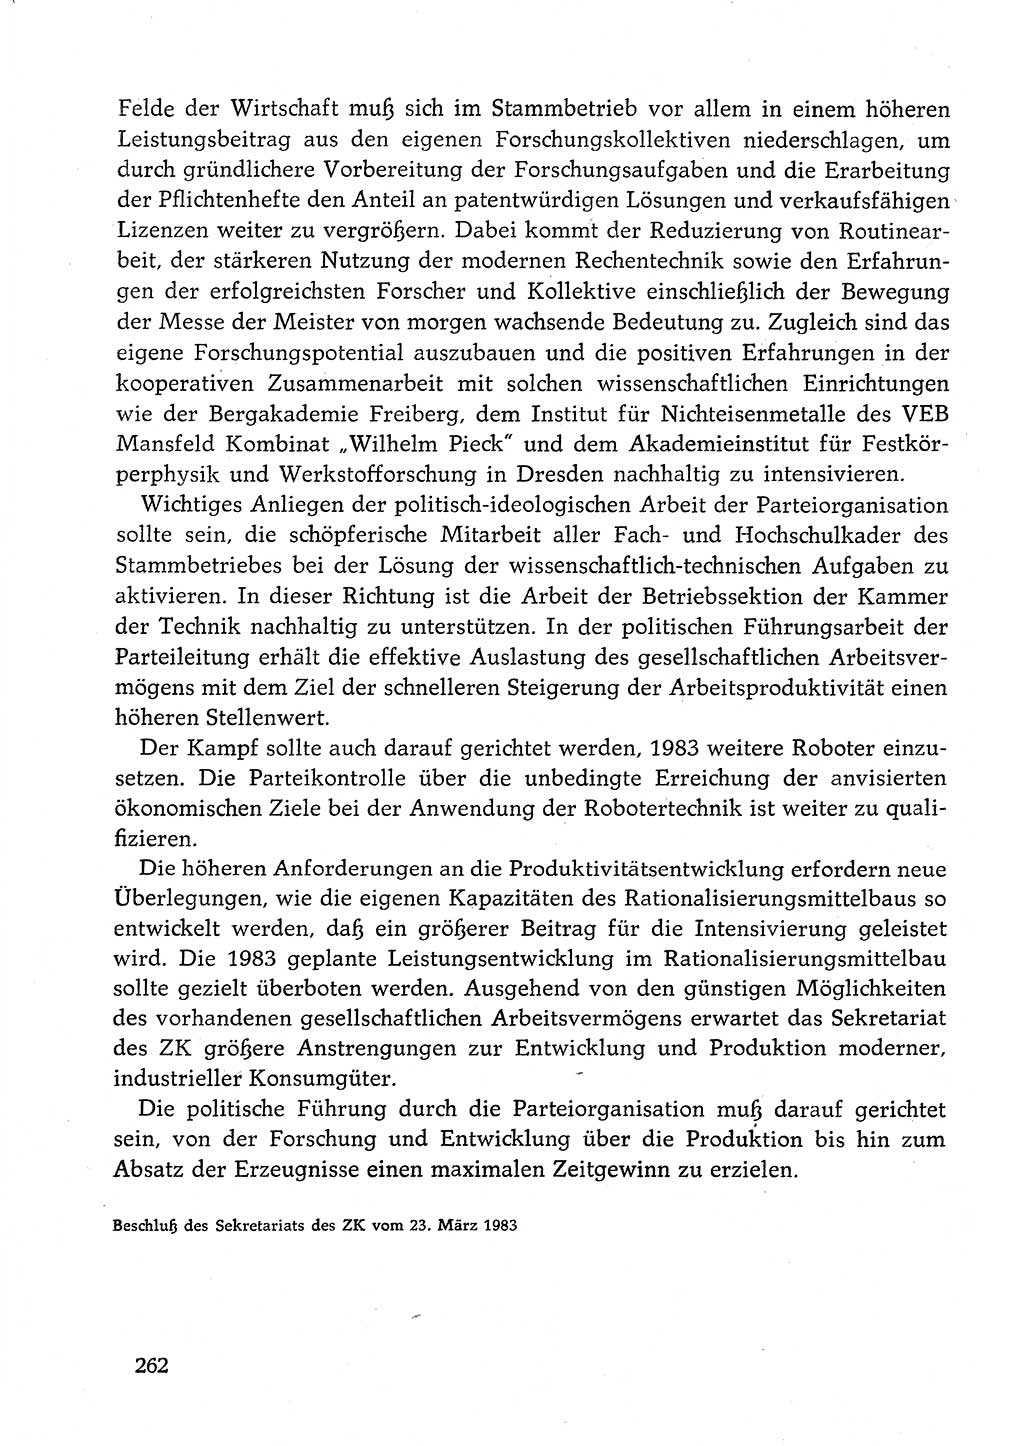 Dokumente der Sozialistischen Einheitspartei Deutschlands (SED) [Deutsche Demokratische Republik (DDR)] 1982-1983, Seite 262 (Dok. SED DDR 1982-1983, S. 262)